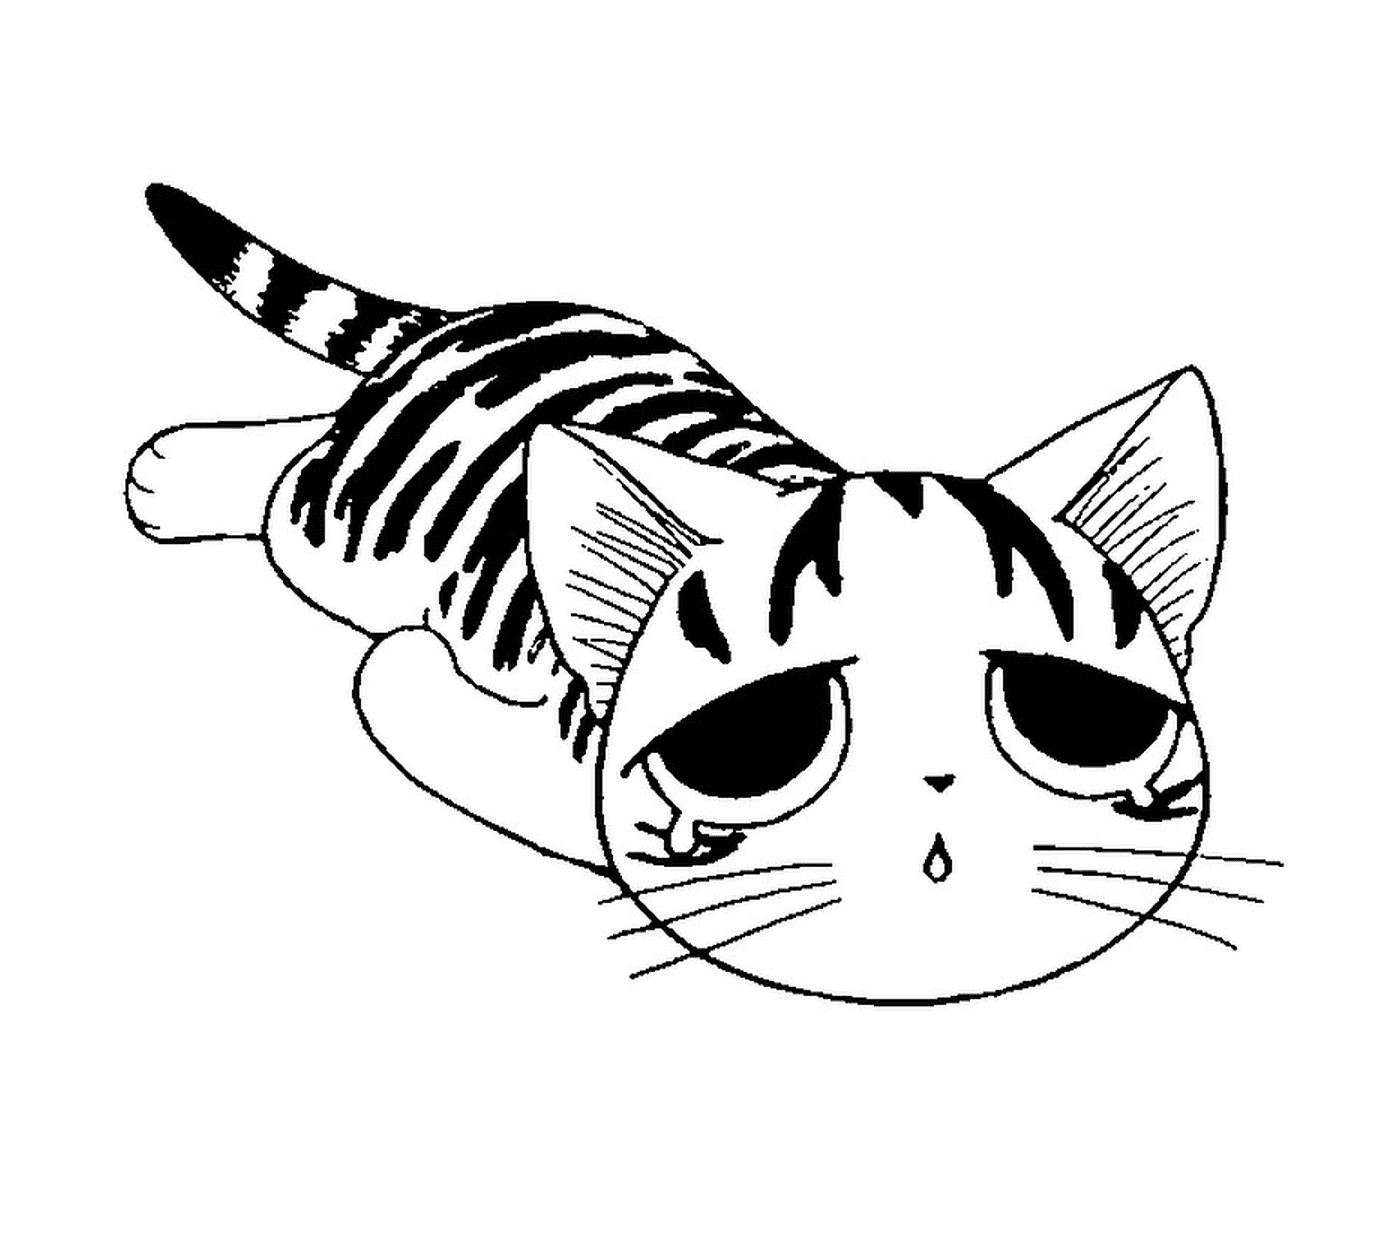  Un gatto cinese triste e stanco 